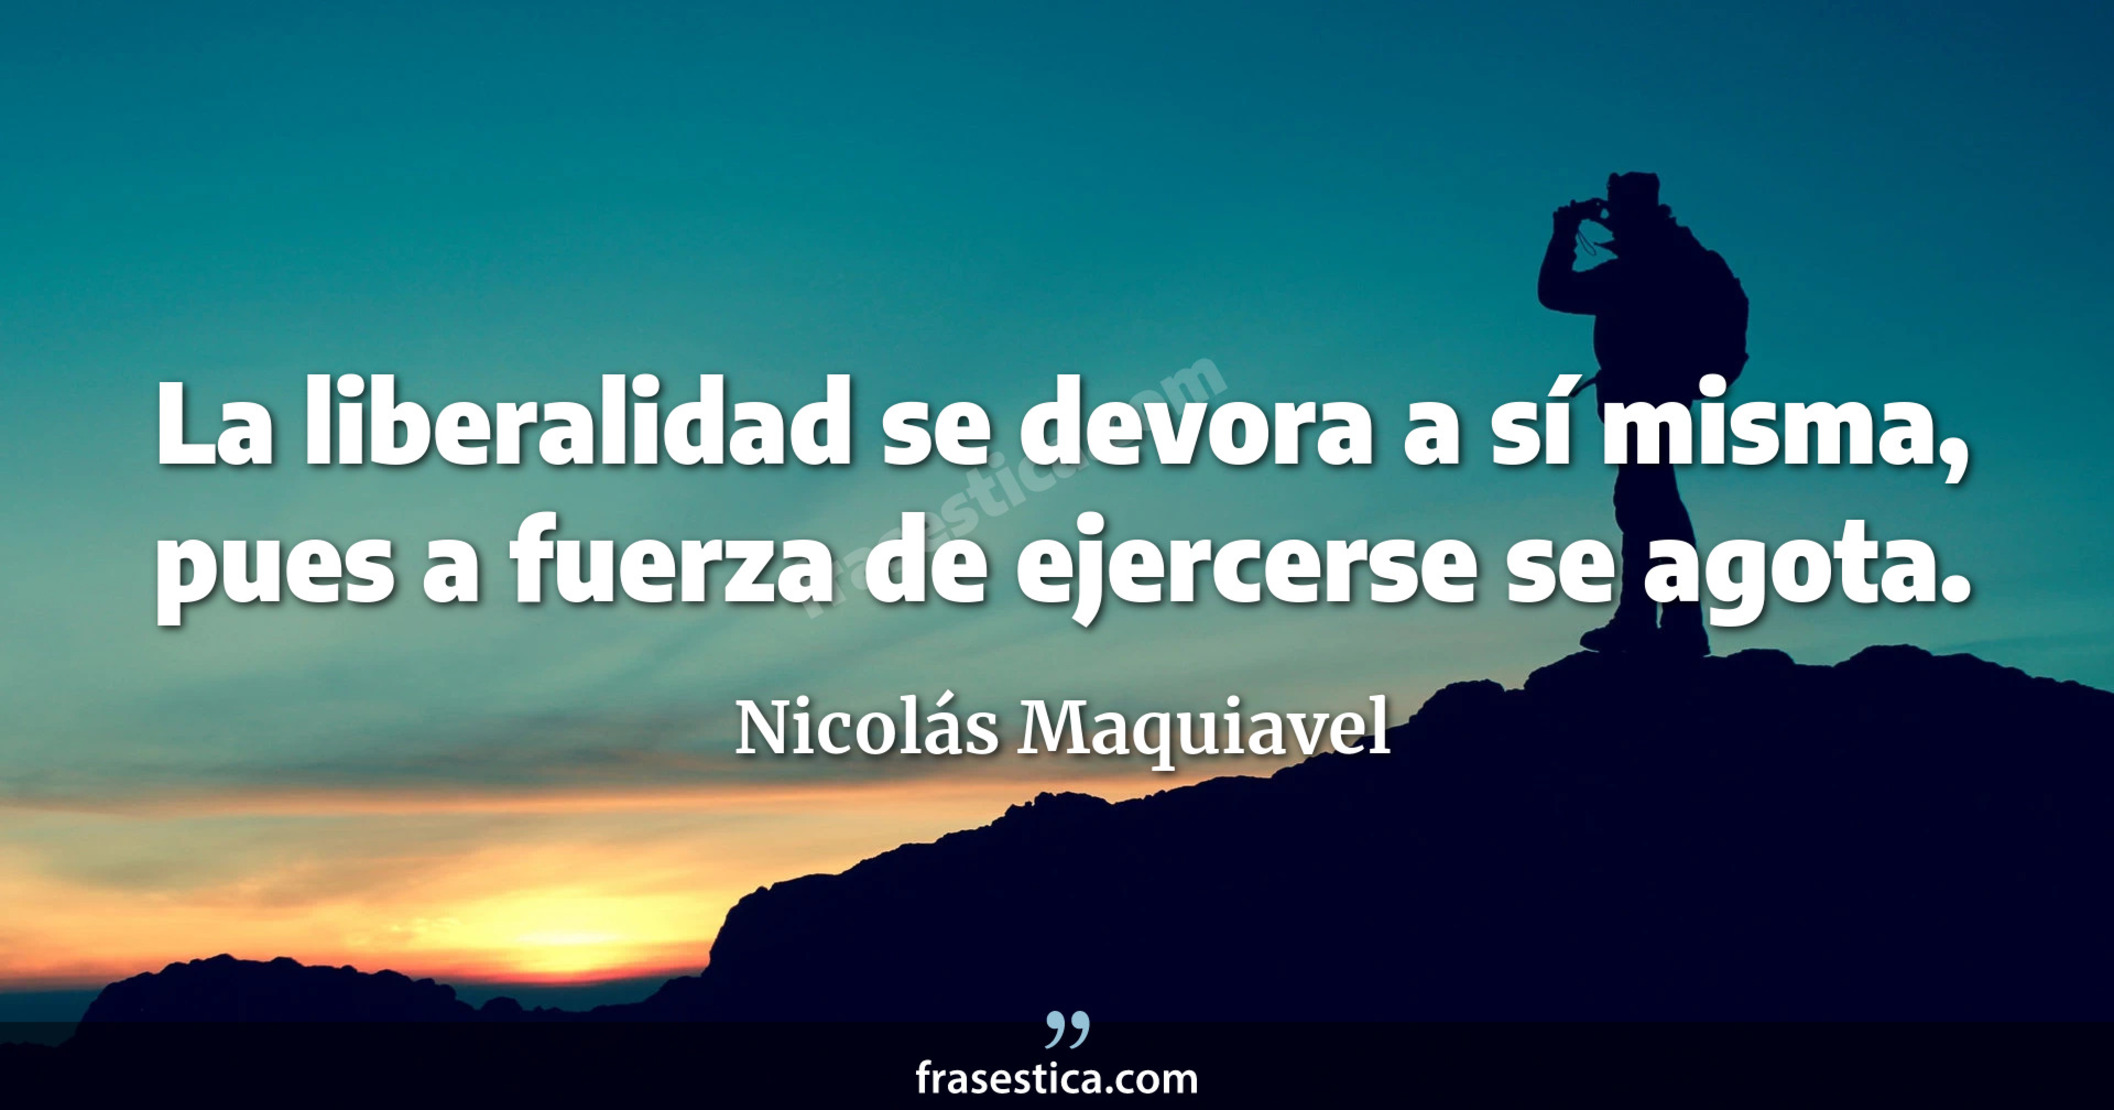 La liberalidad se devora a sí misma, pues a fuerza de ejercerse se agota. - Nicolás Maquiavel